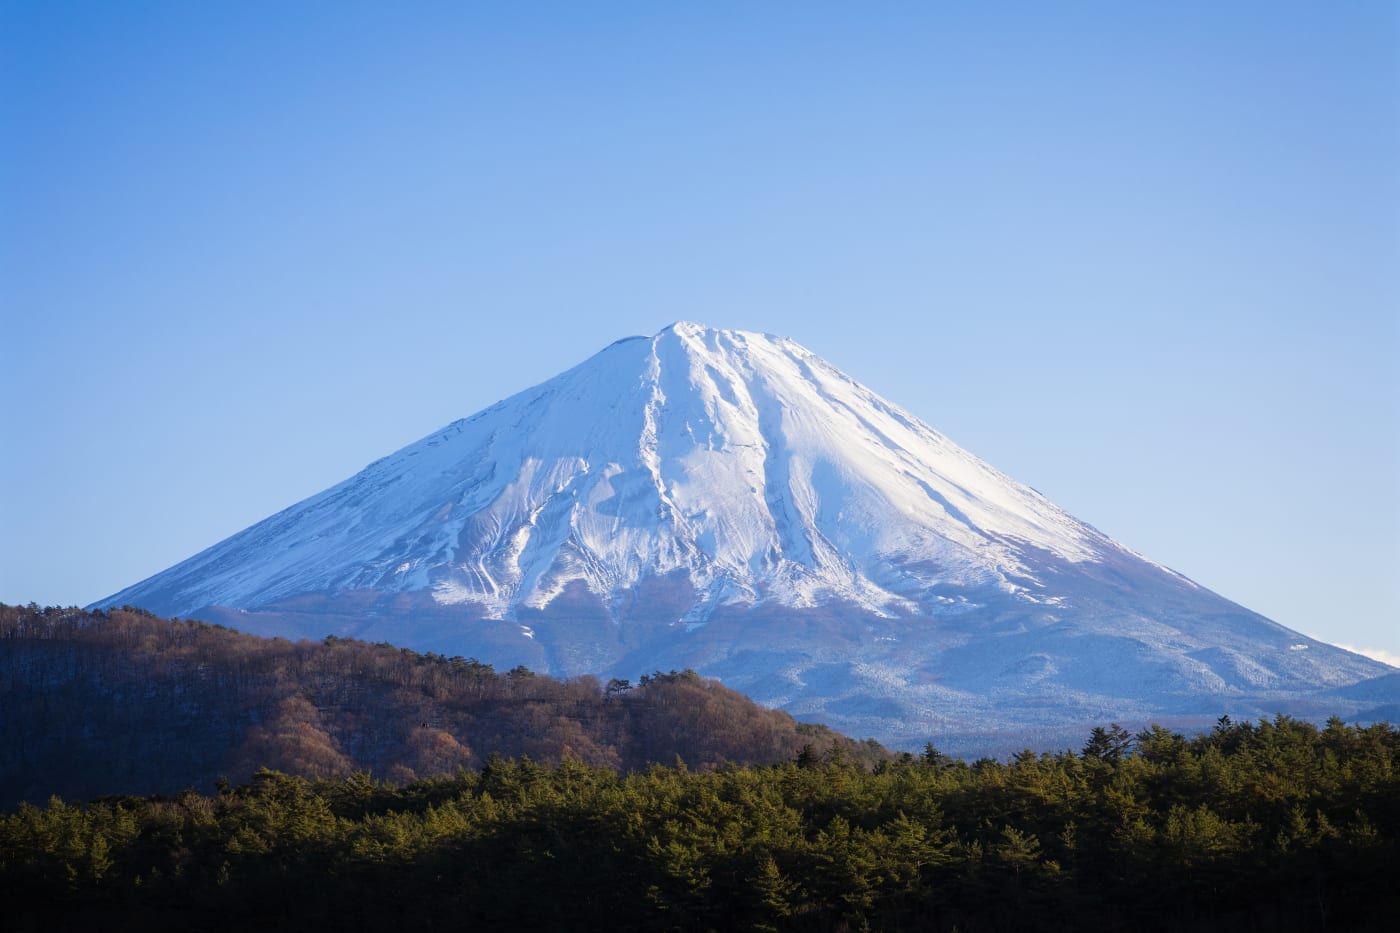 کوه فیجی در کدام کشور قرار دارد؟